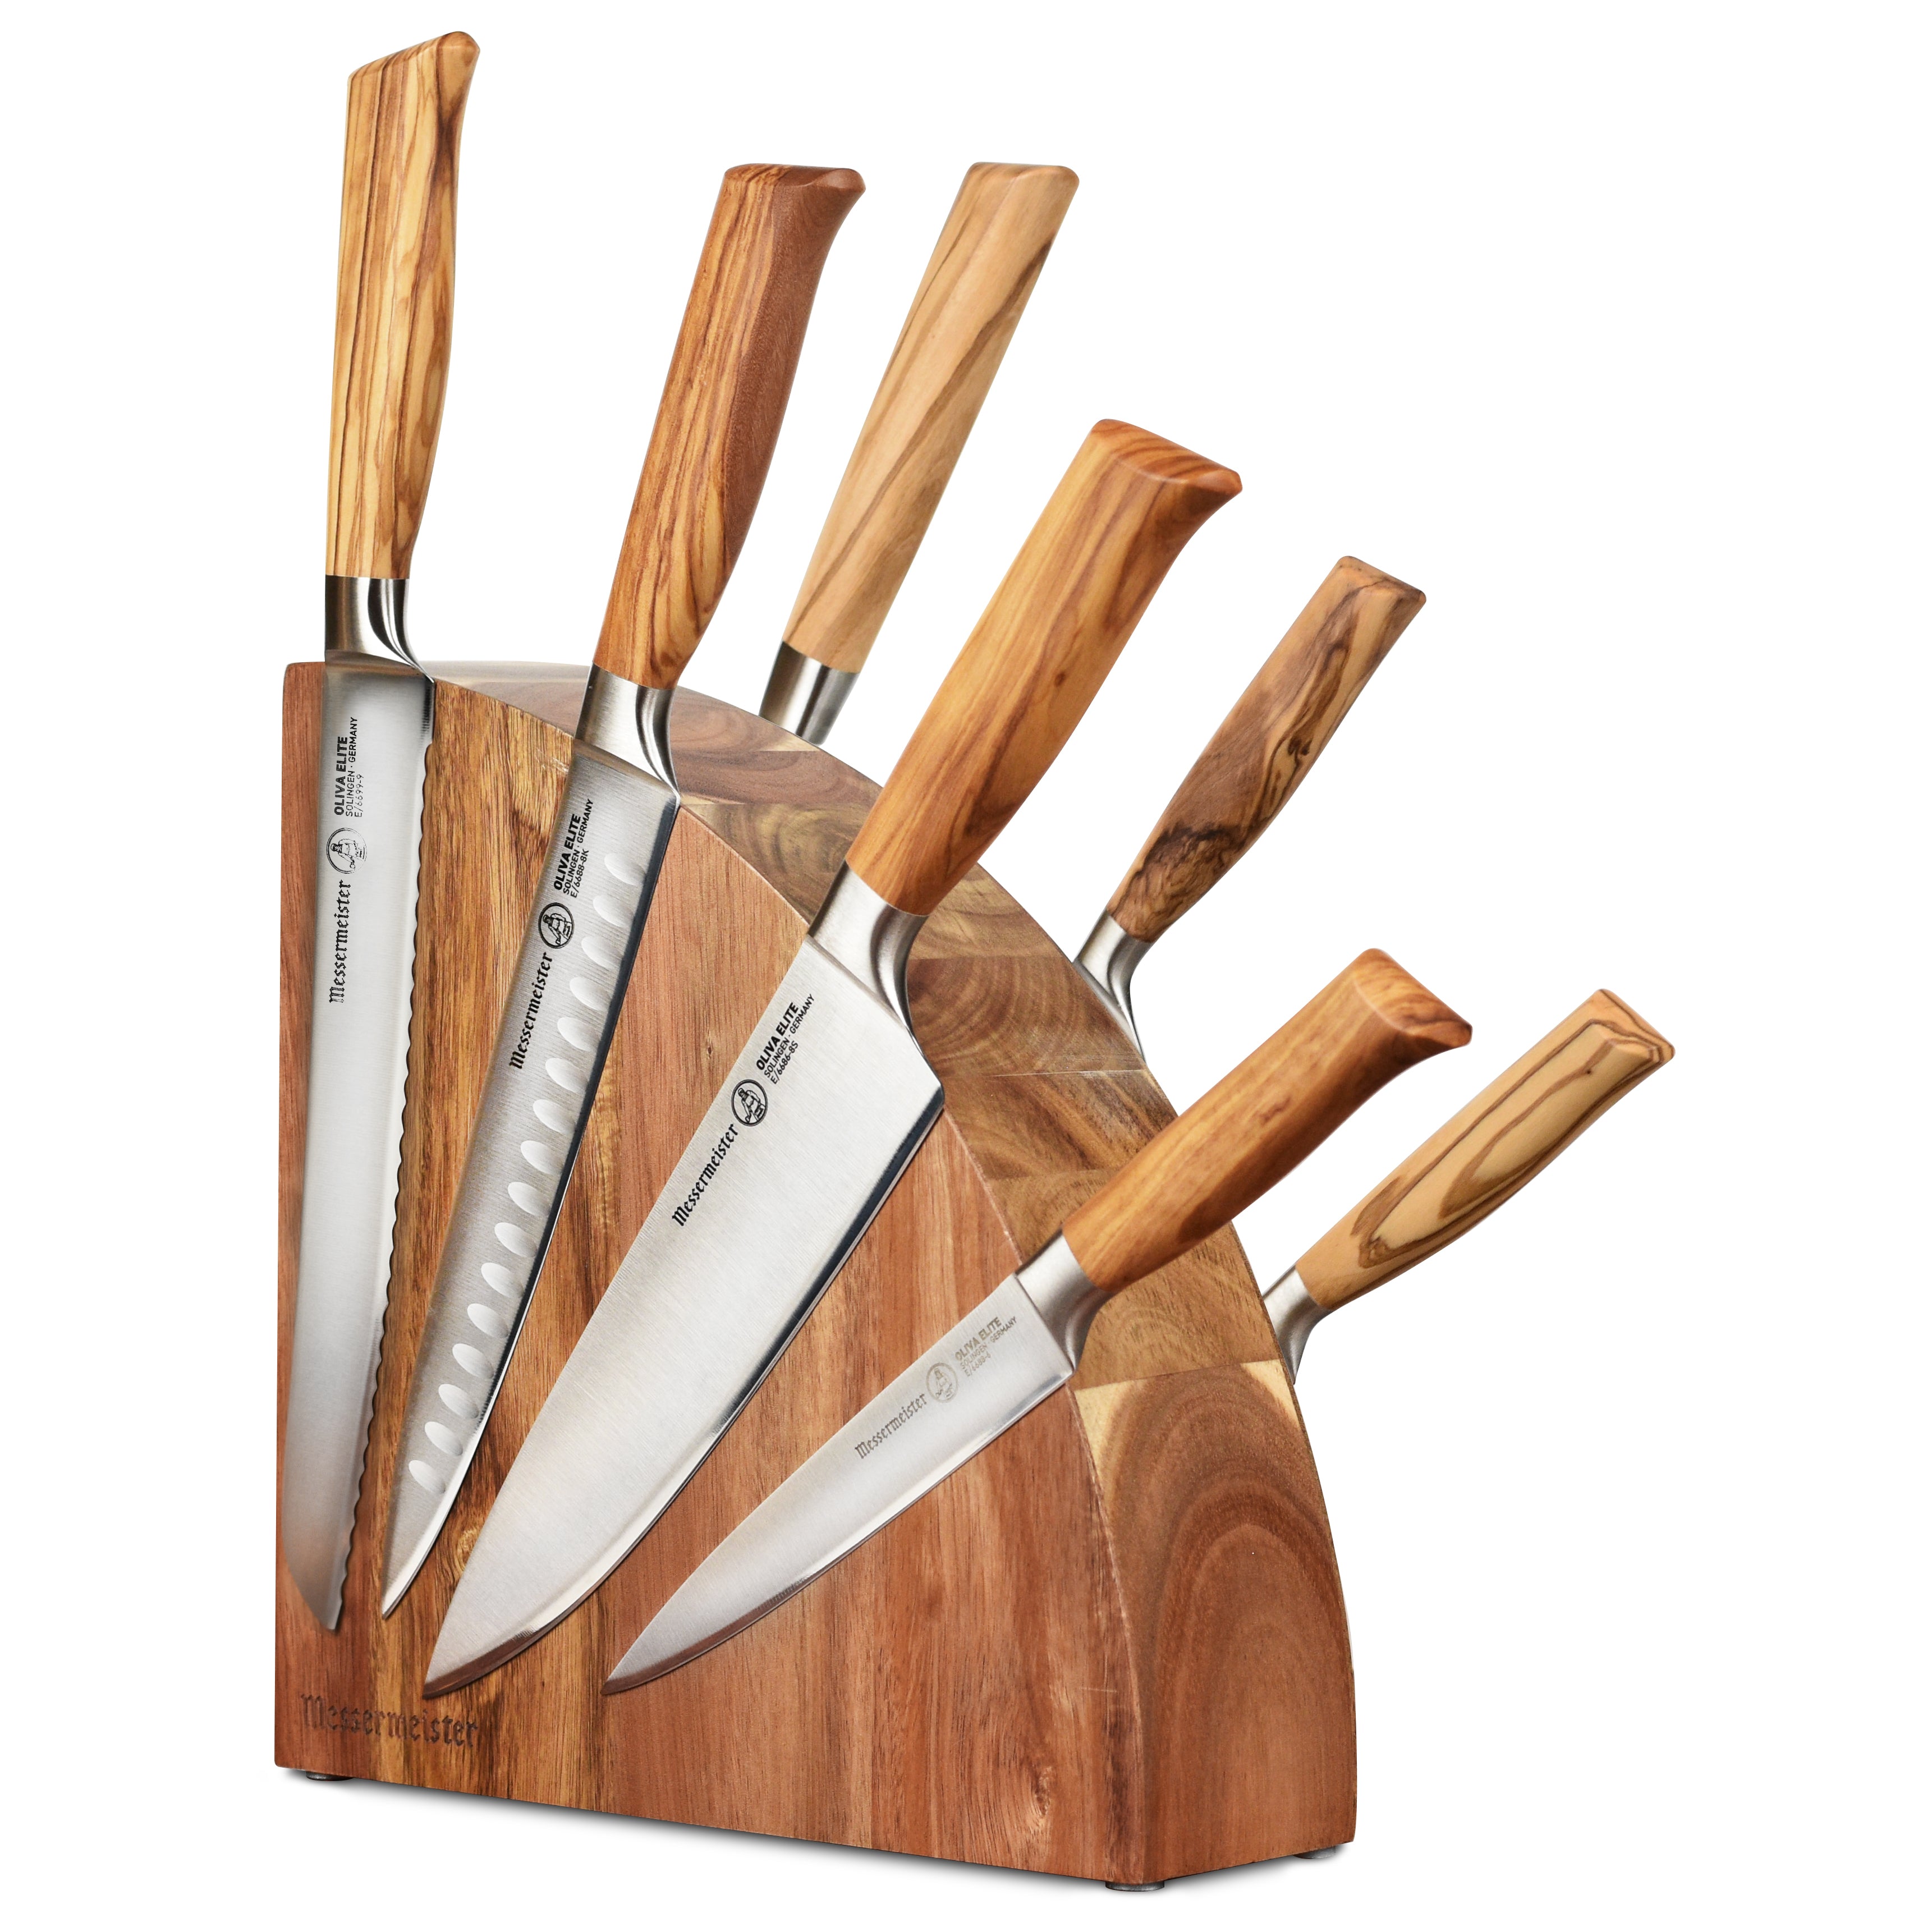 Messermeister Oliva Elite Olive Wood Handled Knives